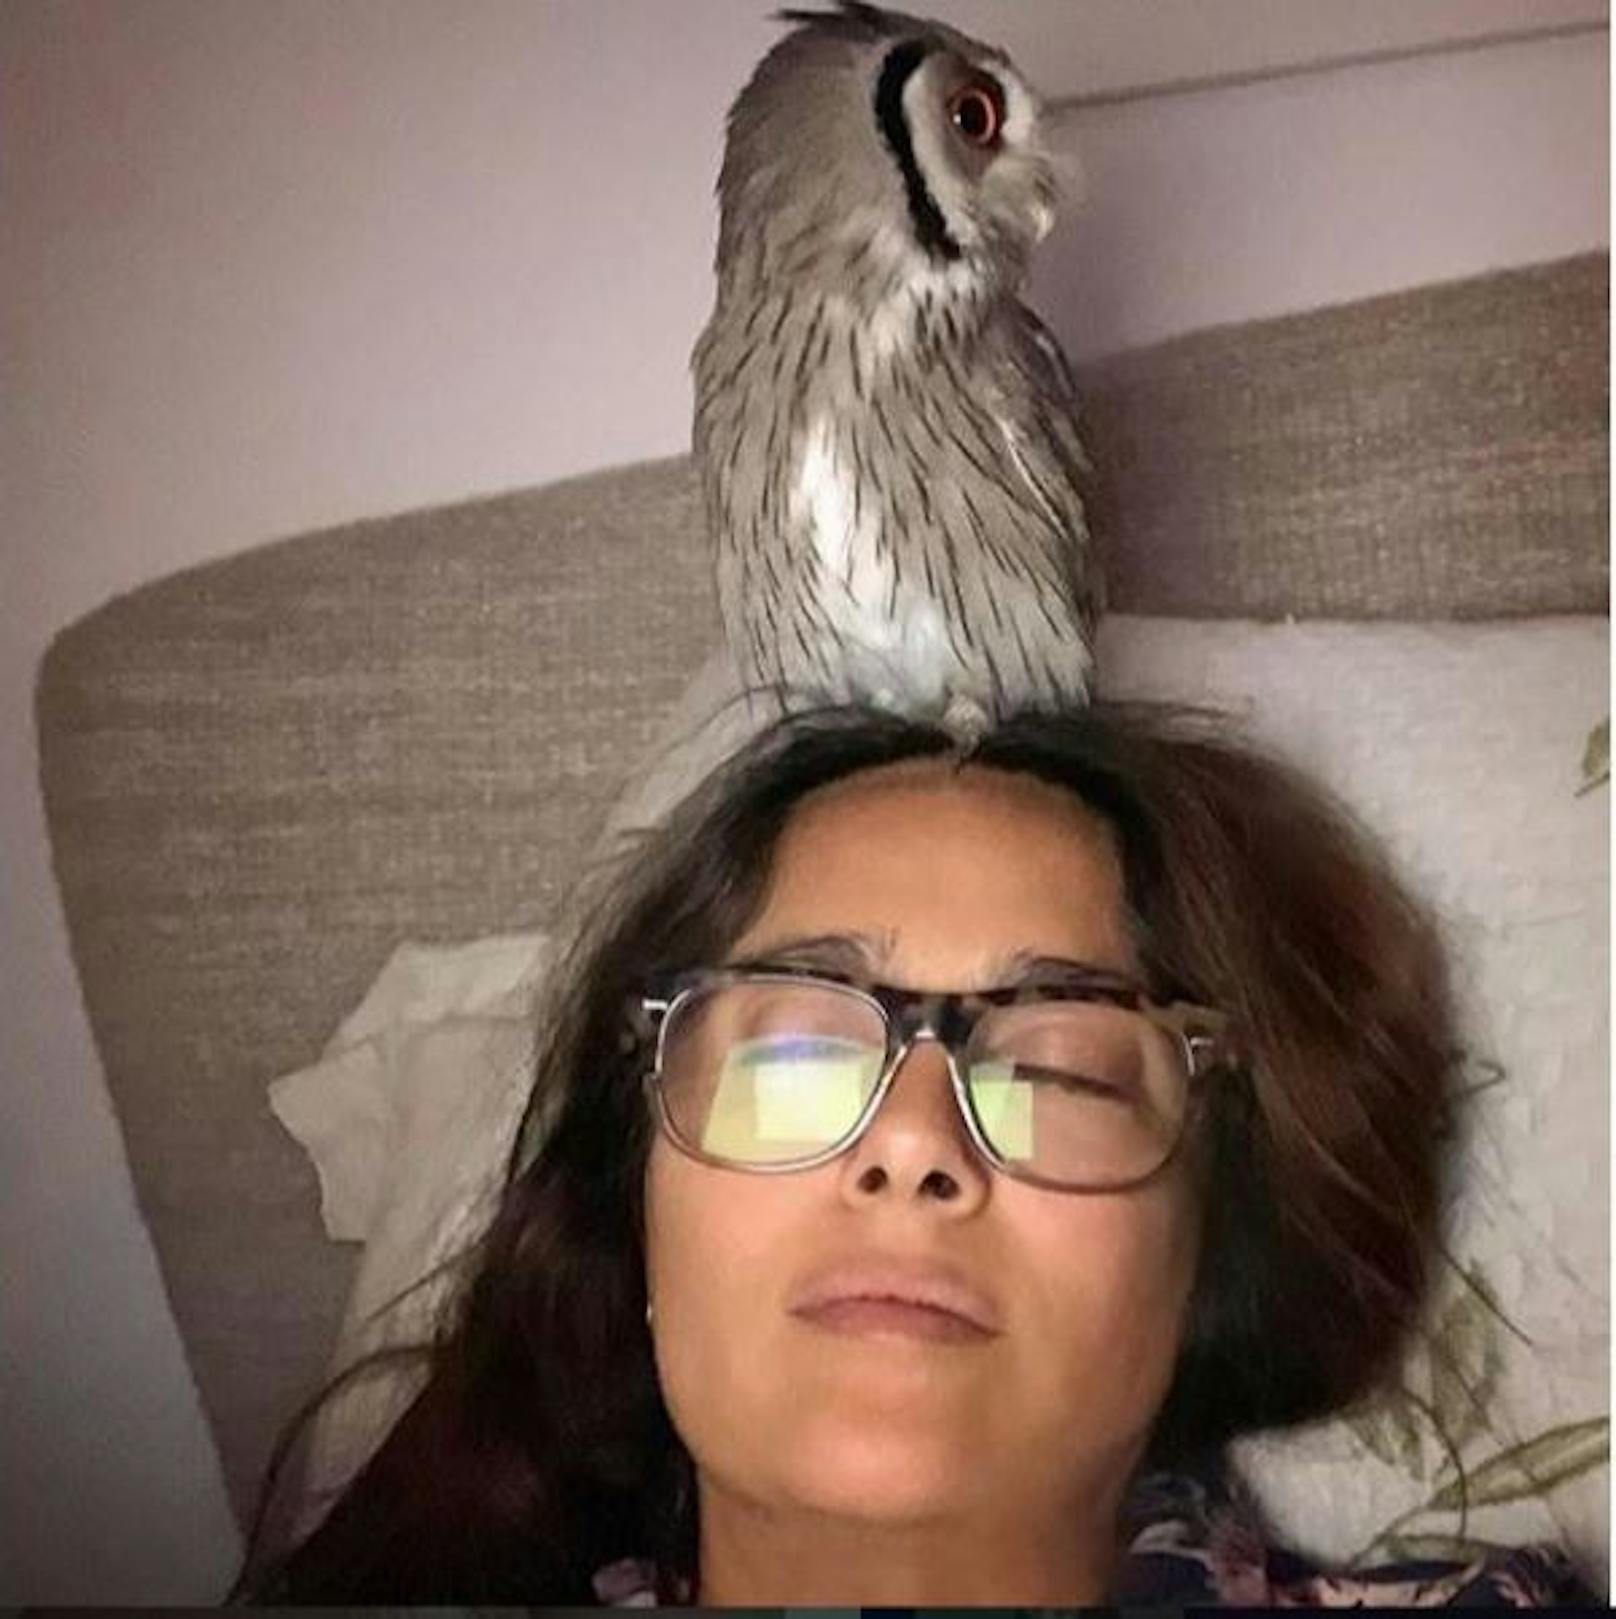 30.5.2020: "Wenn du mit deiner Brille und einer Eule auf dem Kopf, einschläfst", schrieb <strong>Salma Hayek</strong> zu dem Foto. Ob der Vogel ihr neues Haustier ist? 